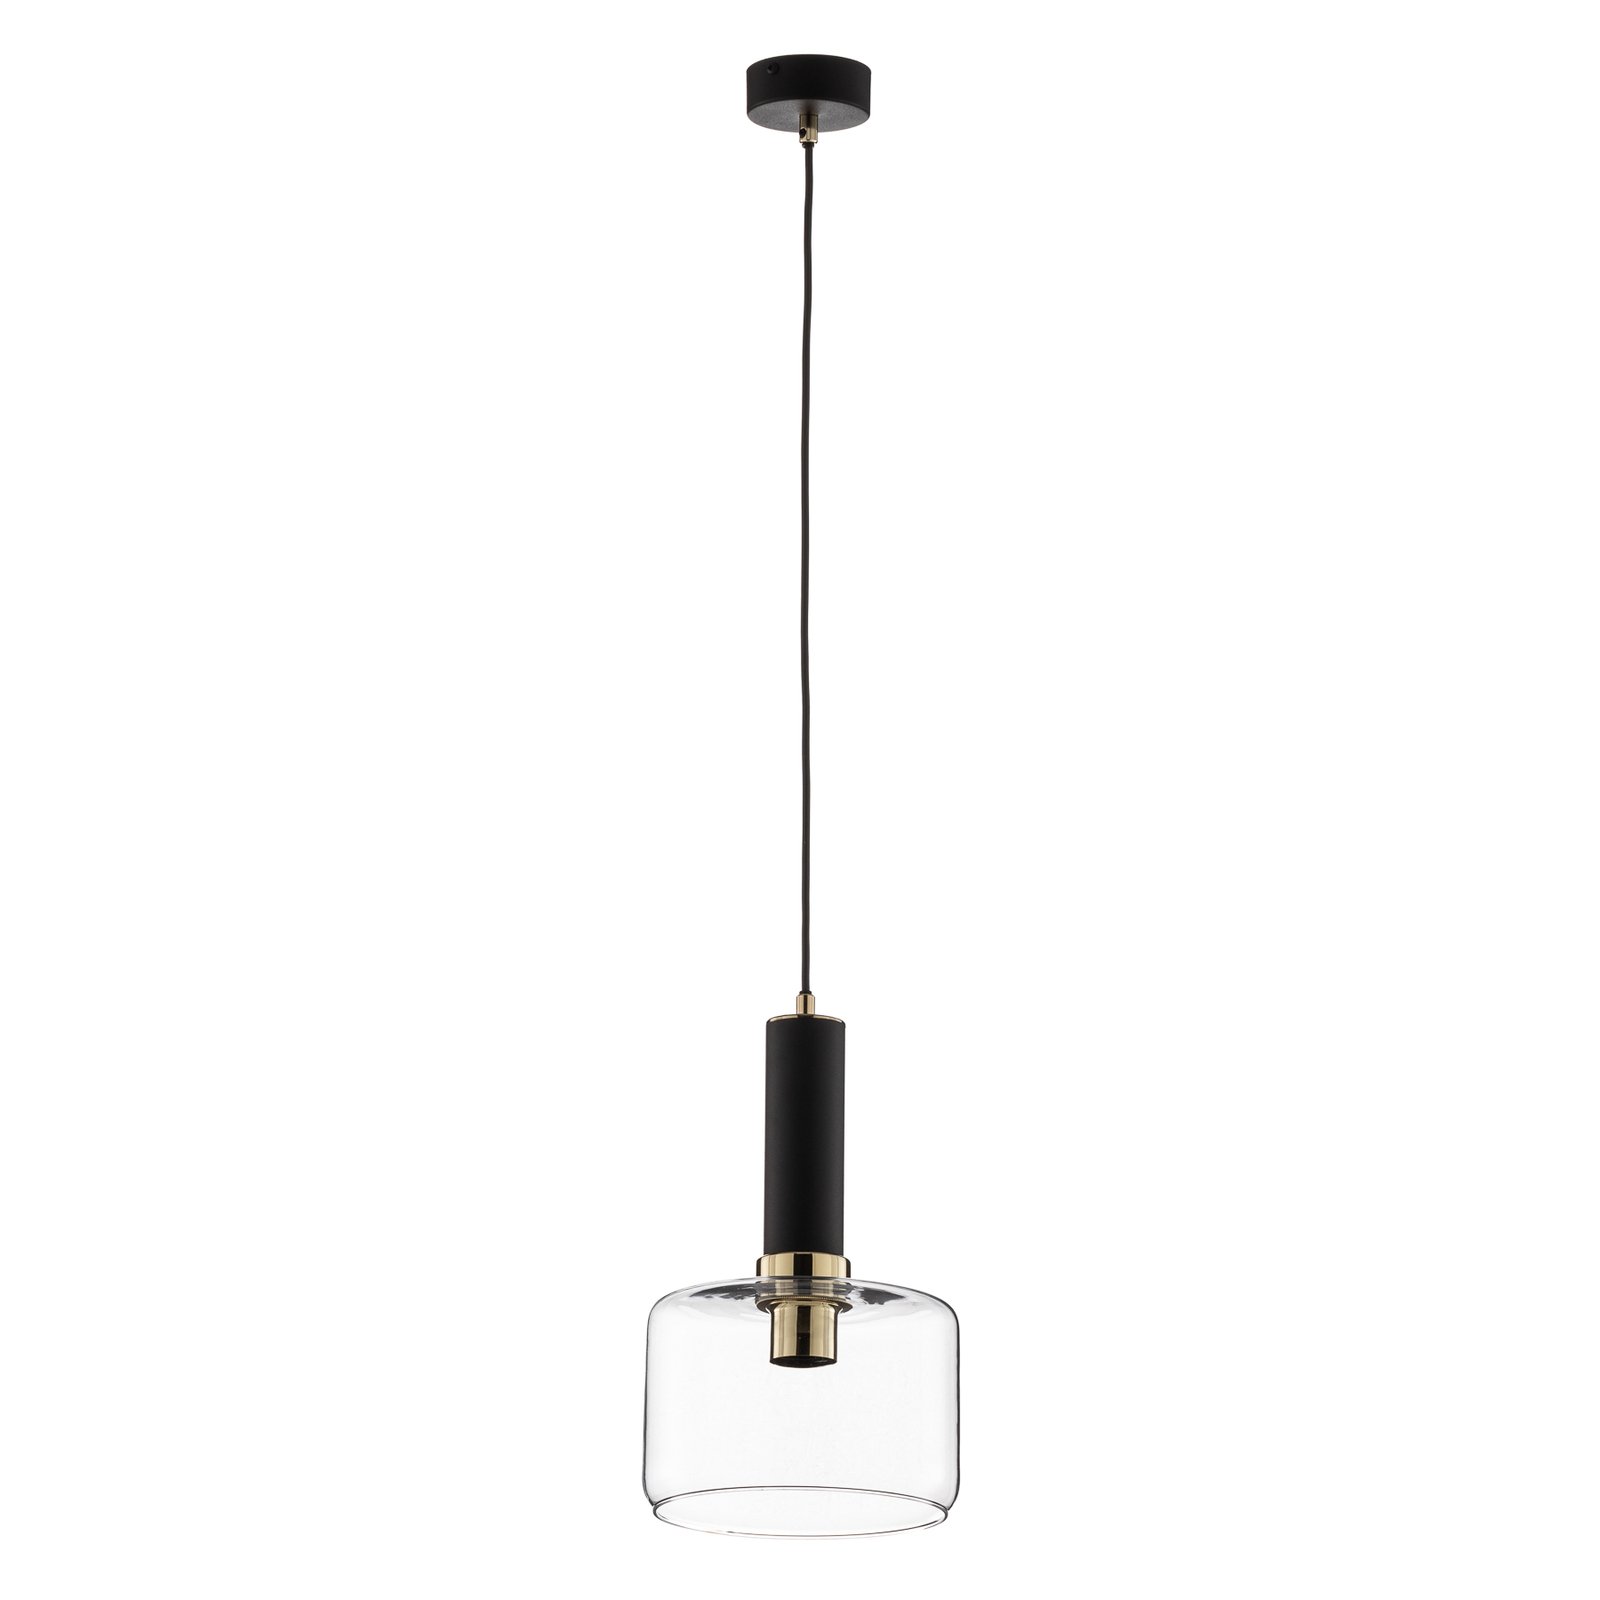 Hanglamp Viva, helder/zwart/messing, 1-lamp